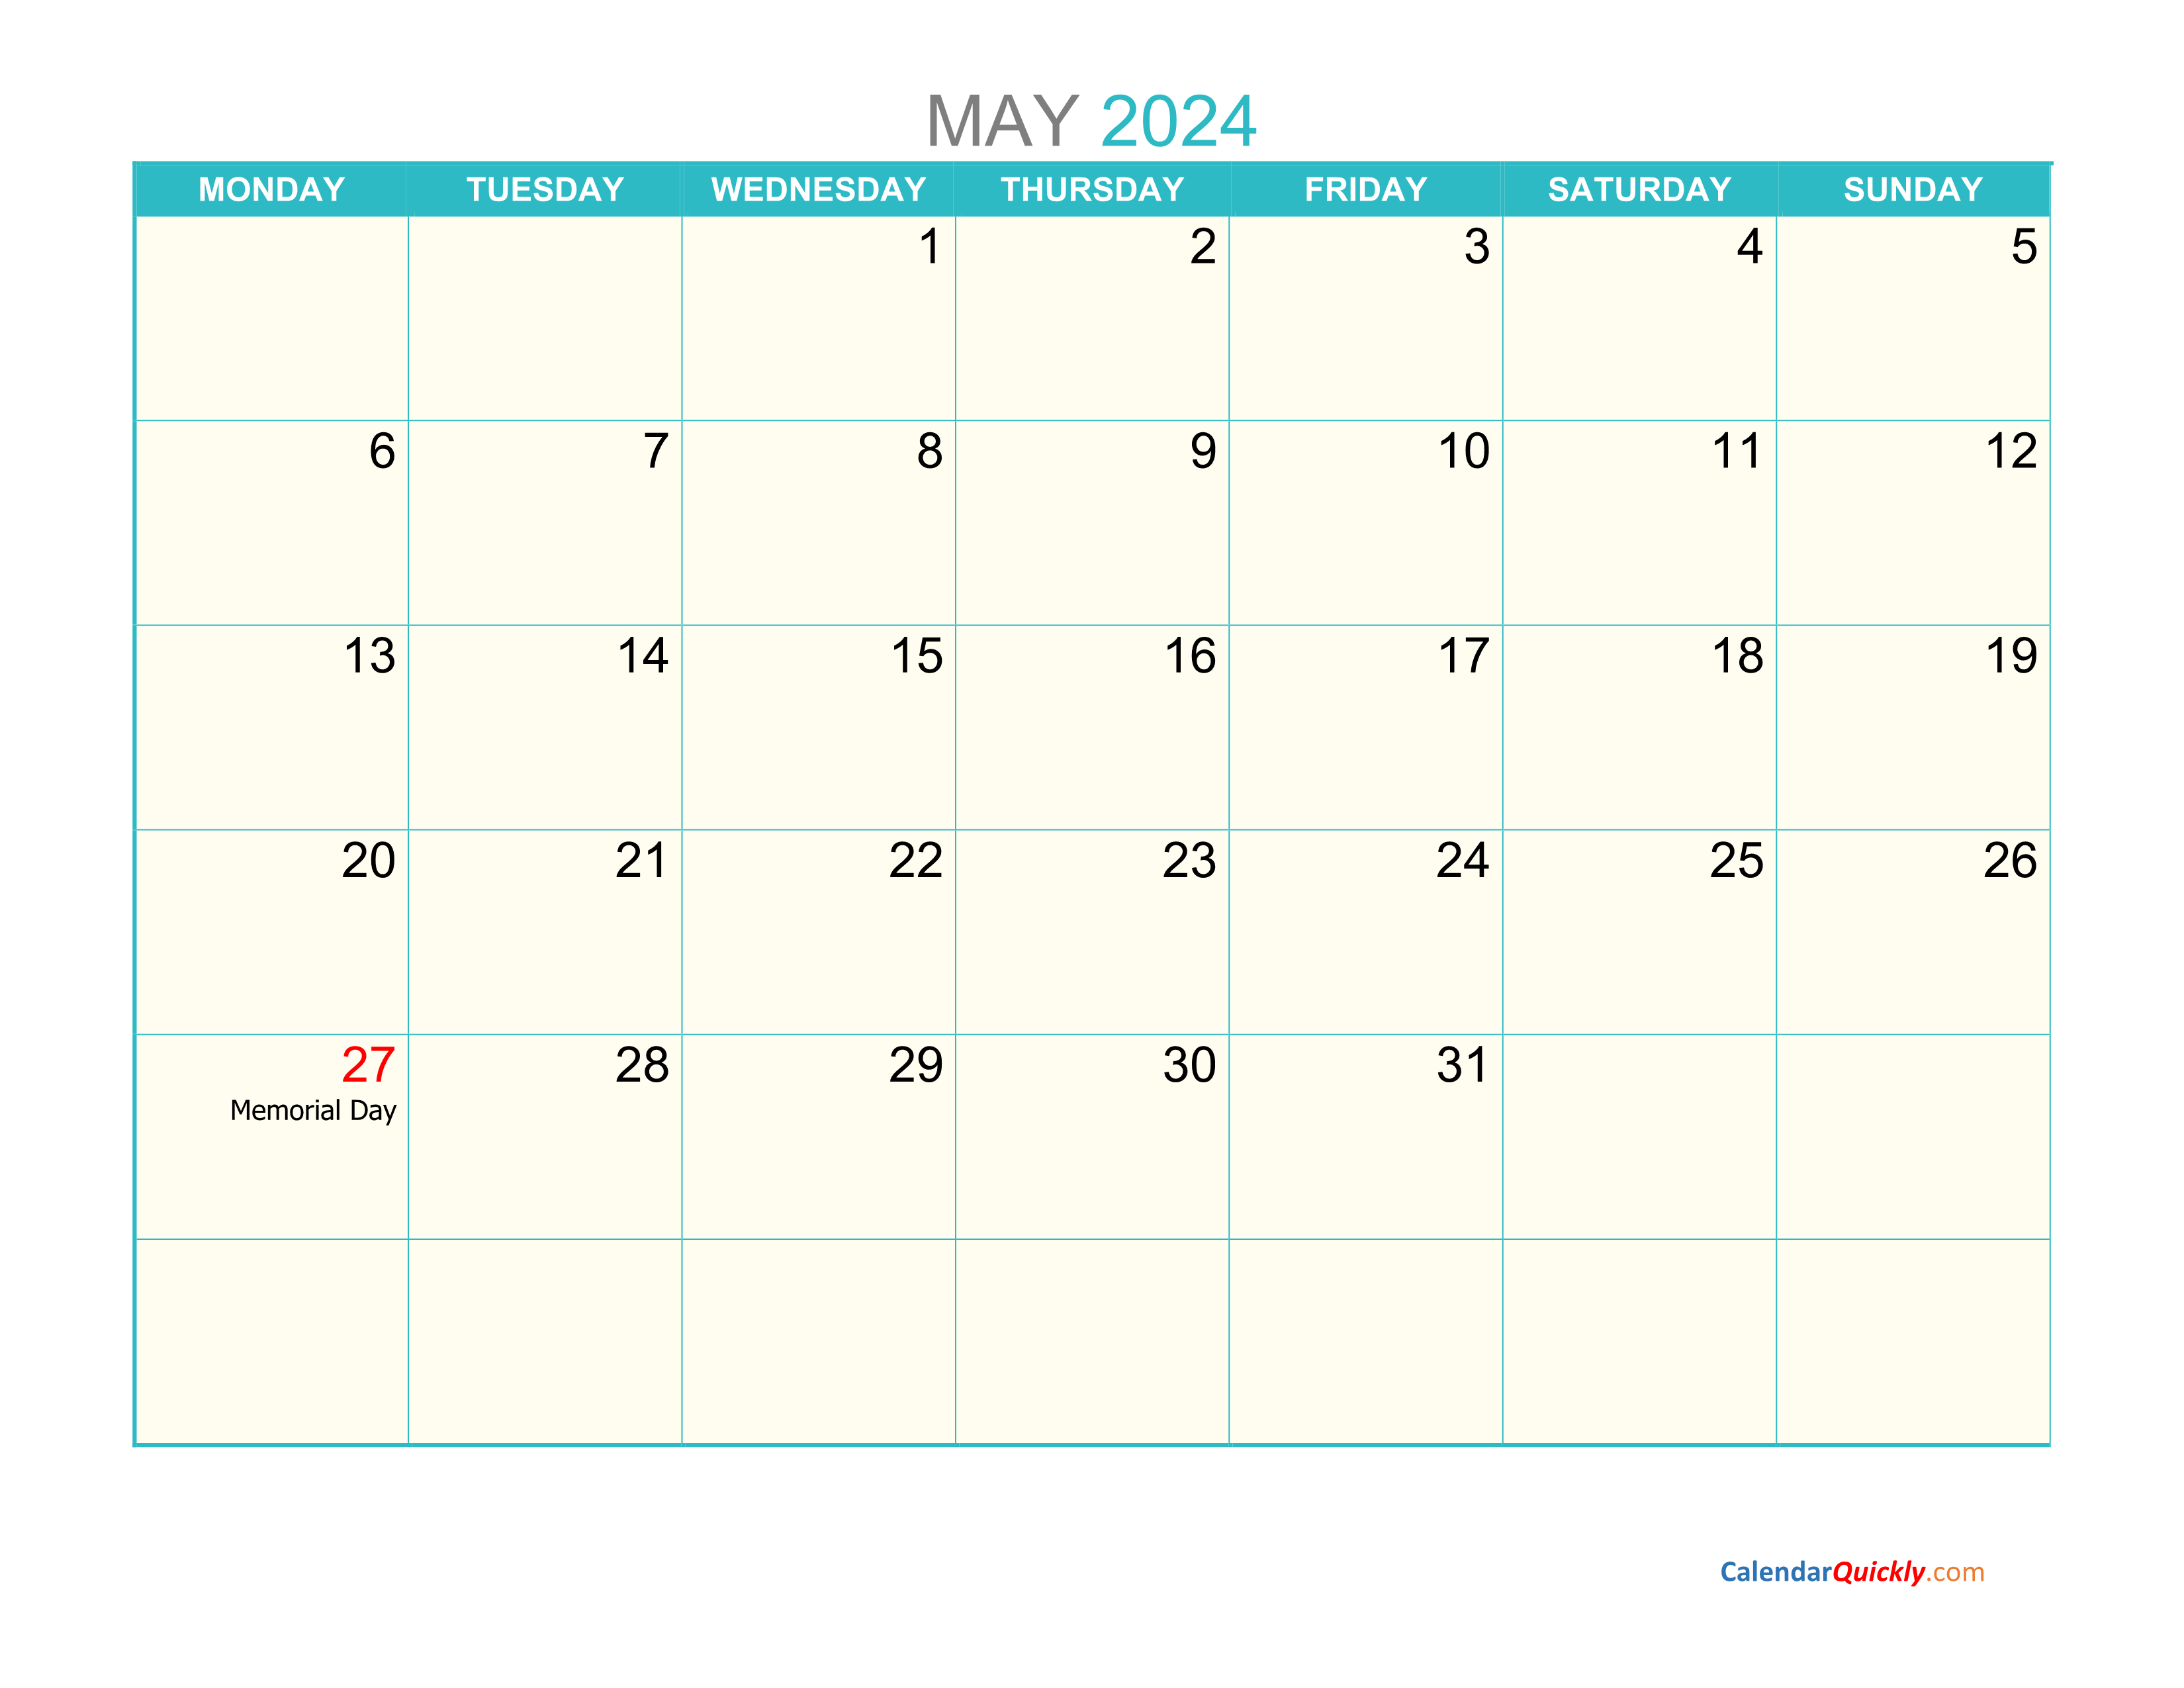 May Monday 2024 Calendar Printable Calendar Quickly